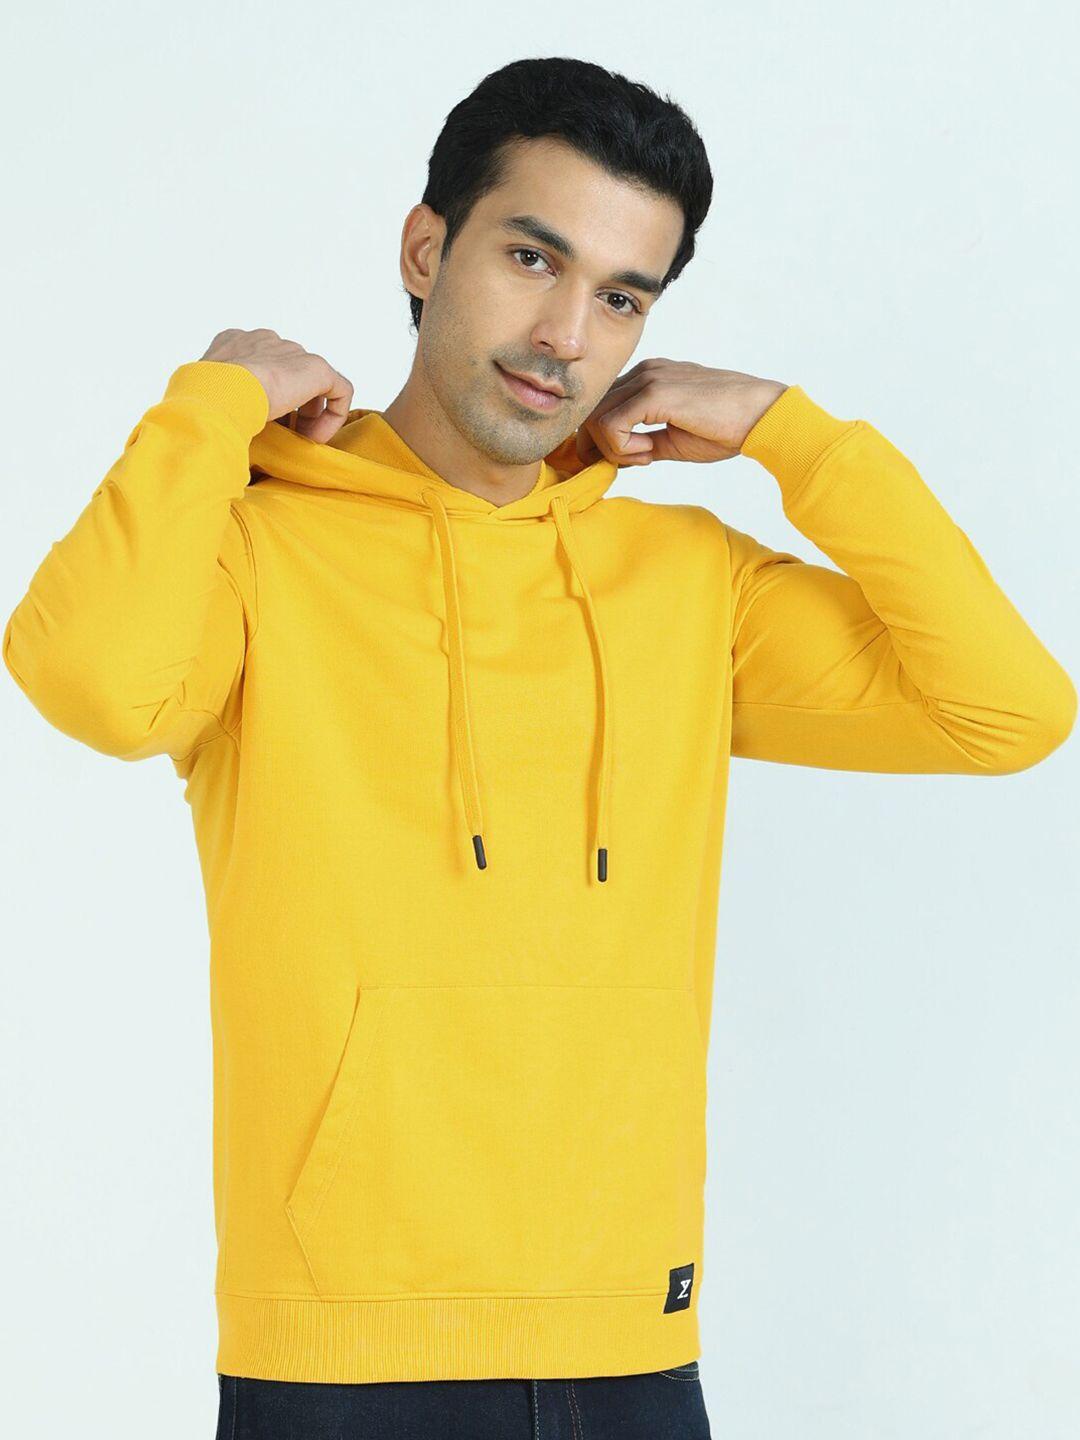 xyxx men yellow hooded sweatshirt